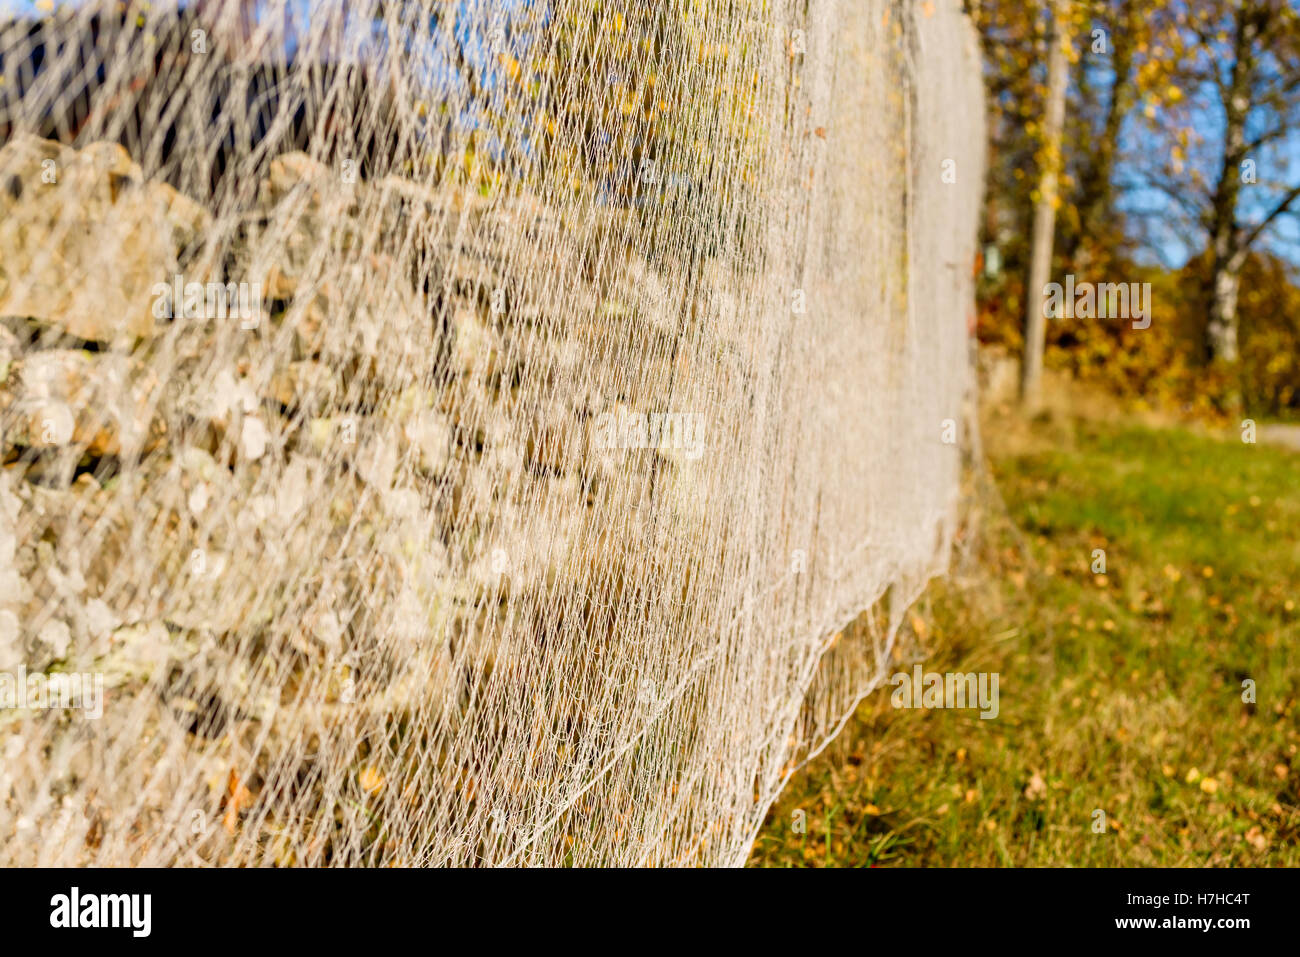 Netzstrümpfe zum im Herbst trocknen gehängt. Verschwommene Bäume im Hintergrund. Stockfoto